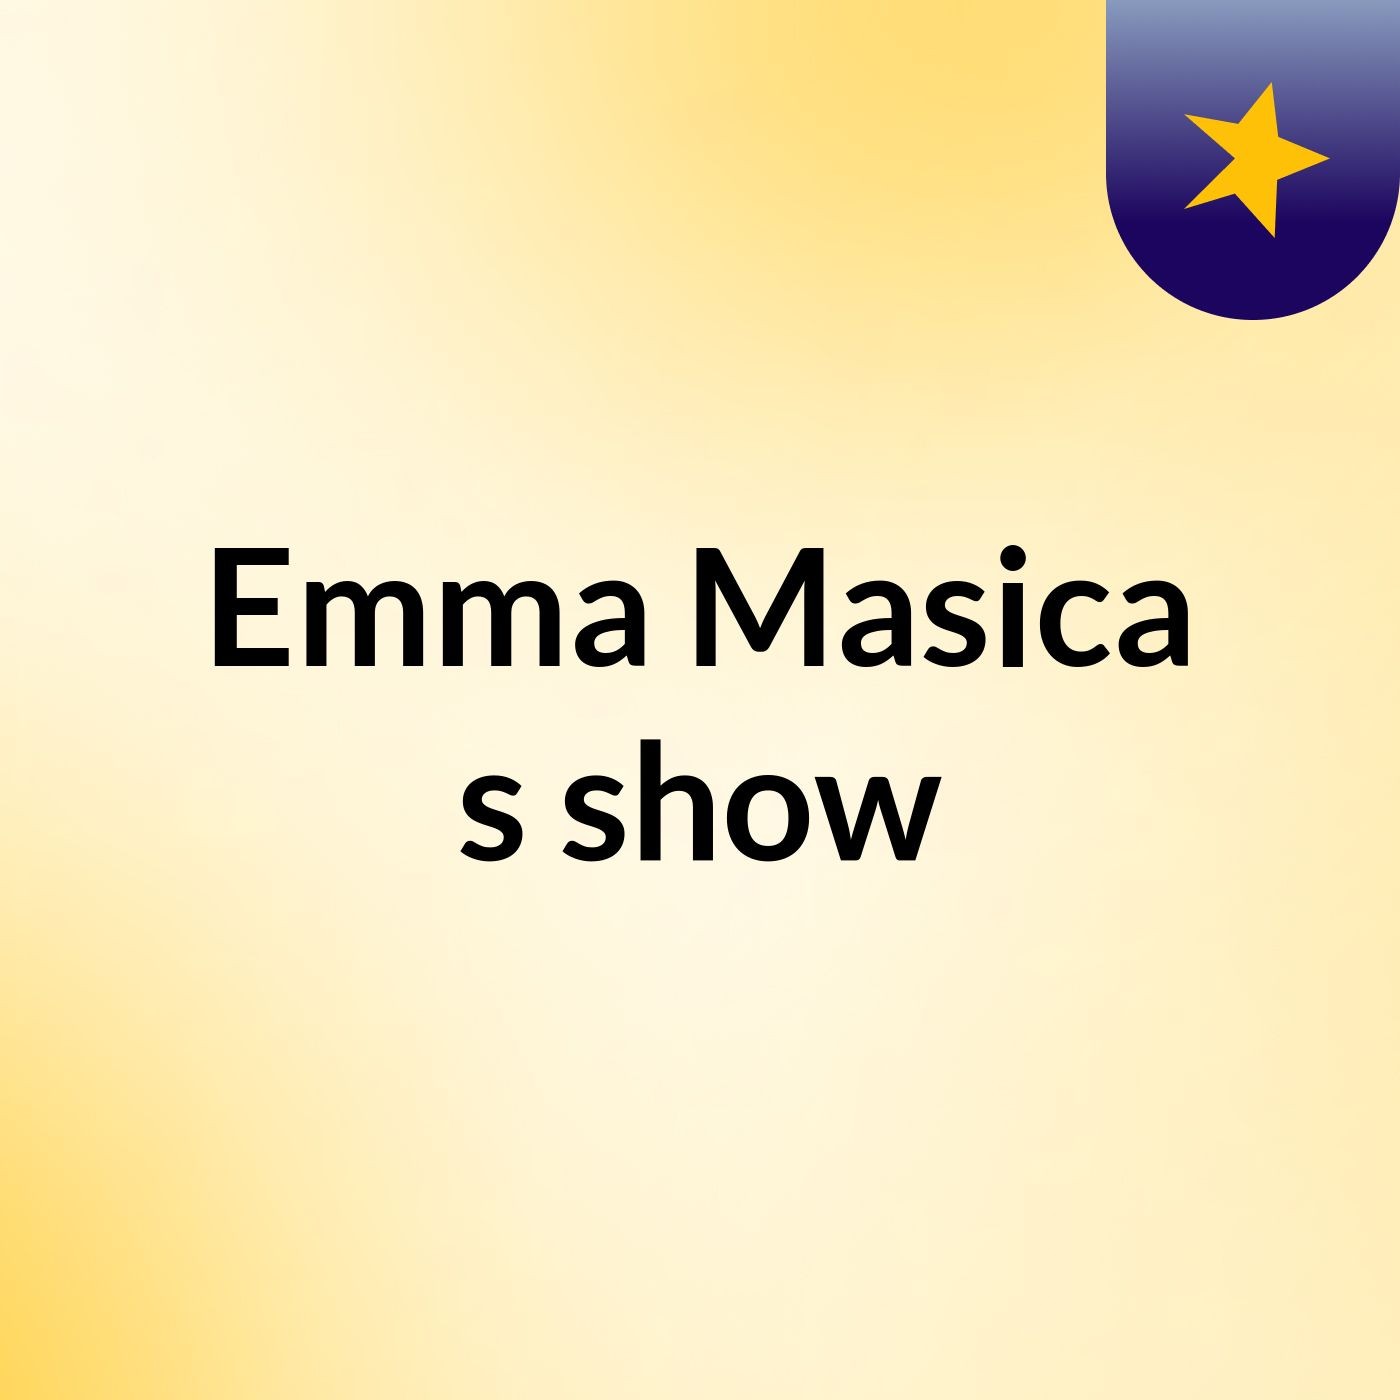 Emma Masica's show